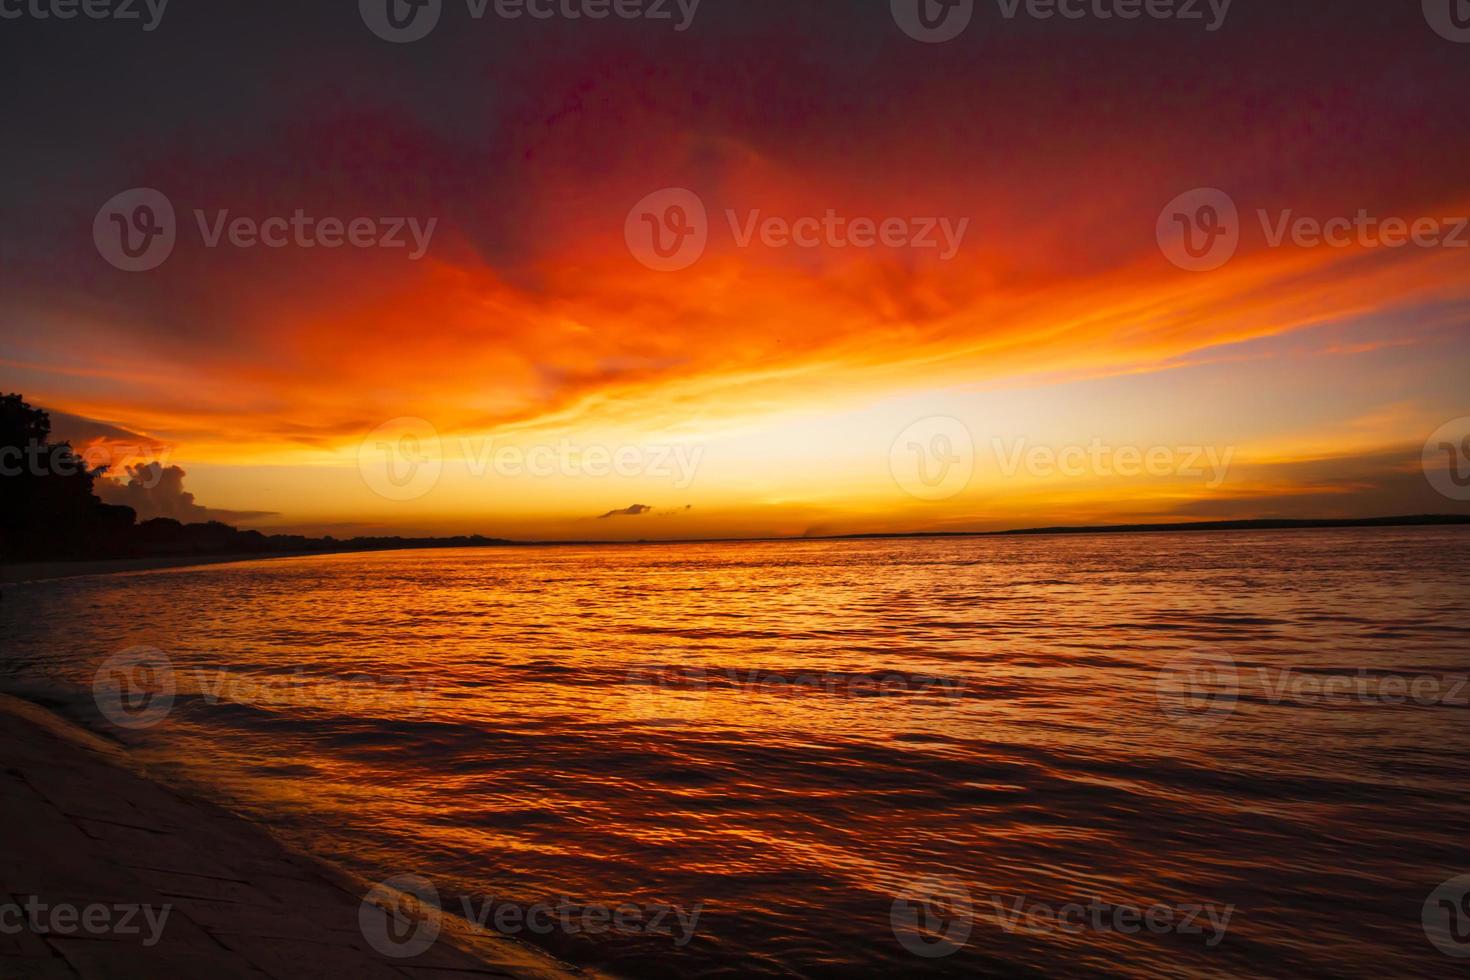 bela vista panorâmica do mar contra o céu laranja foto